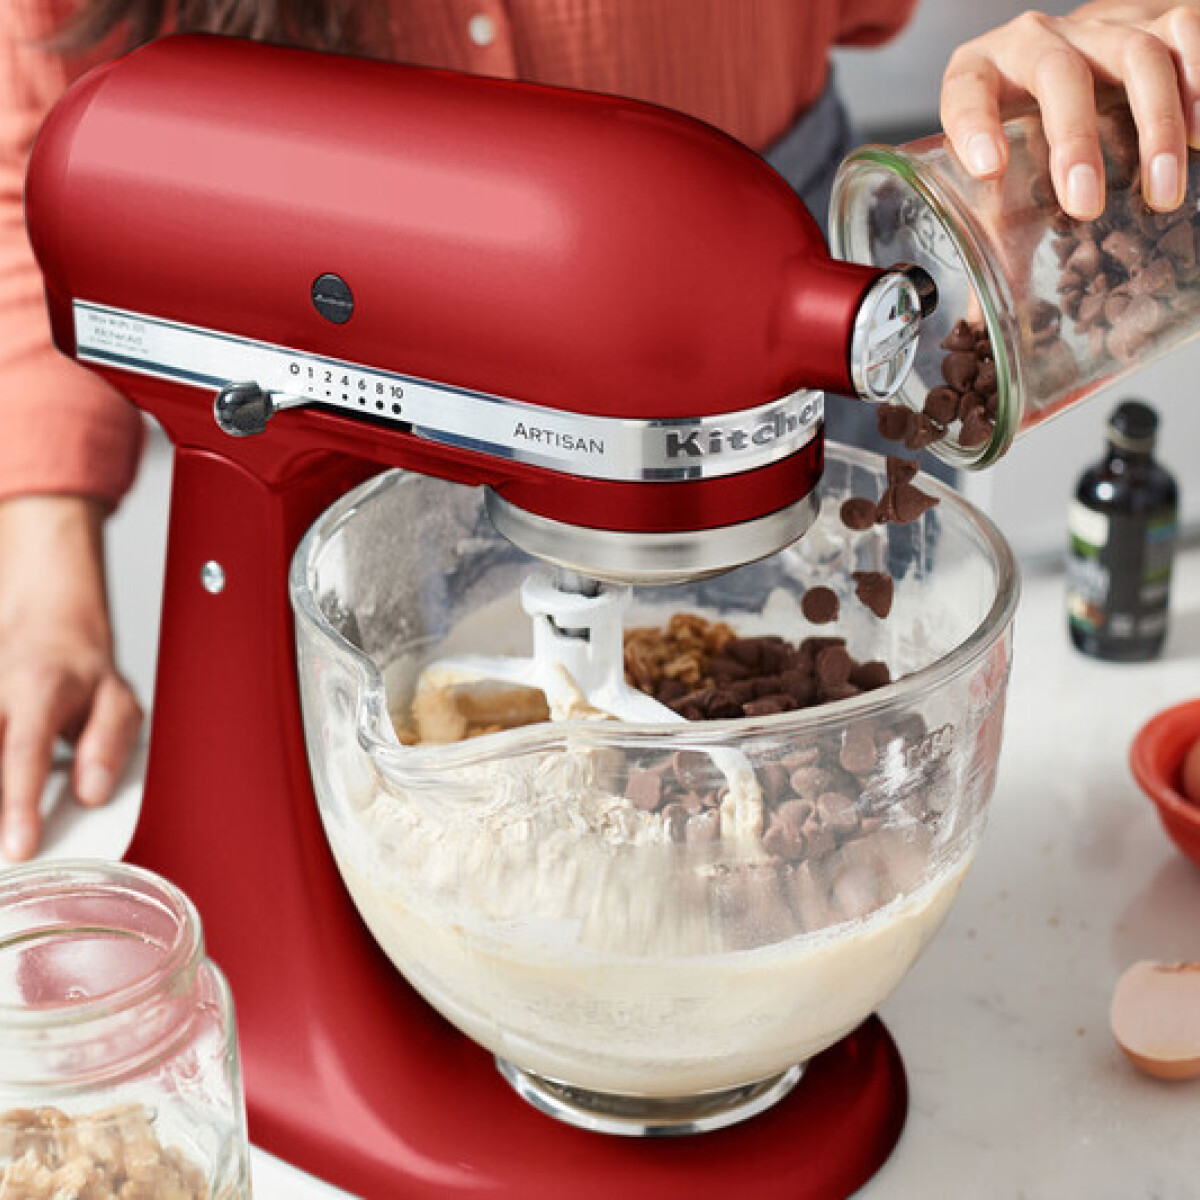 Leteszteltünk 3 népszerű KitchenAid konyhai gépet, és már tudjuk, mit kérünk karácsonyra